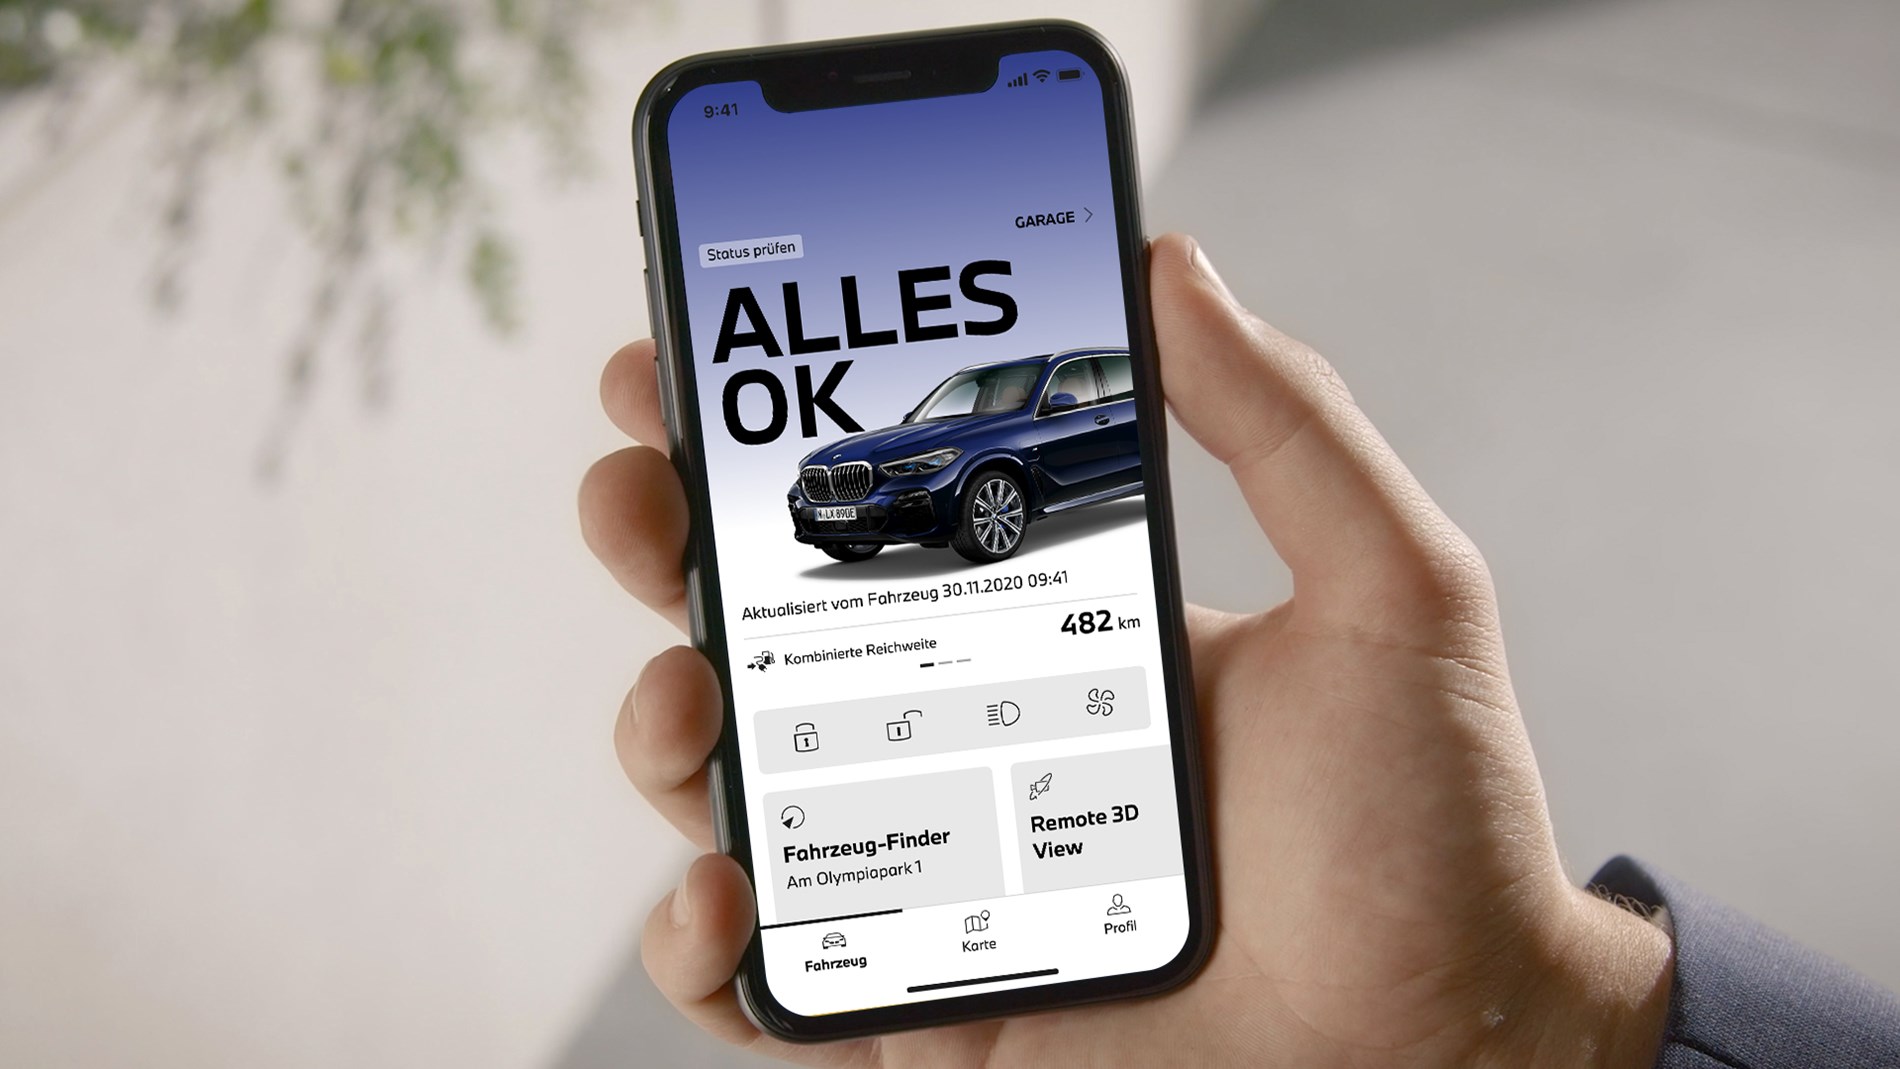 De nieuwste generatie My BMW App nu beschikbaar voor BMW-rijders.